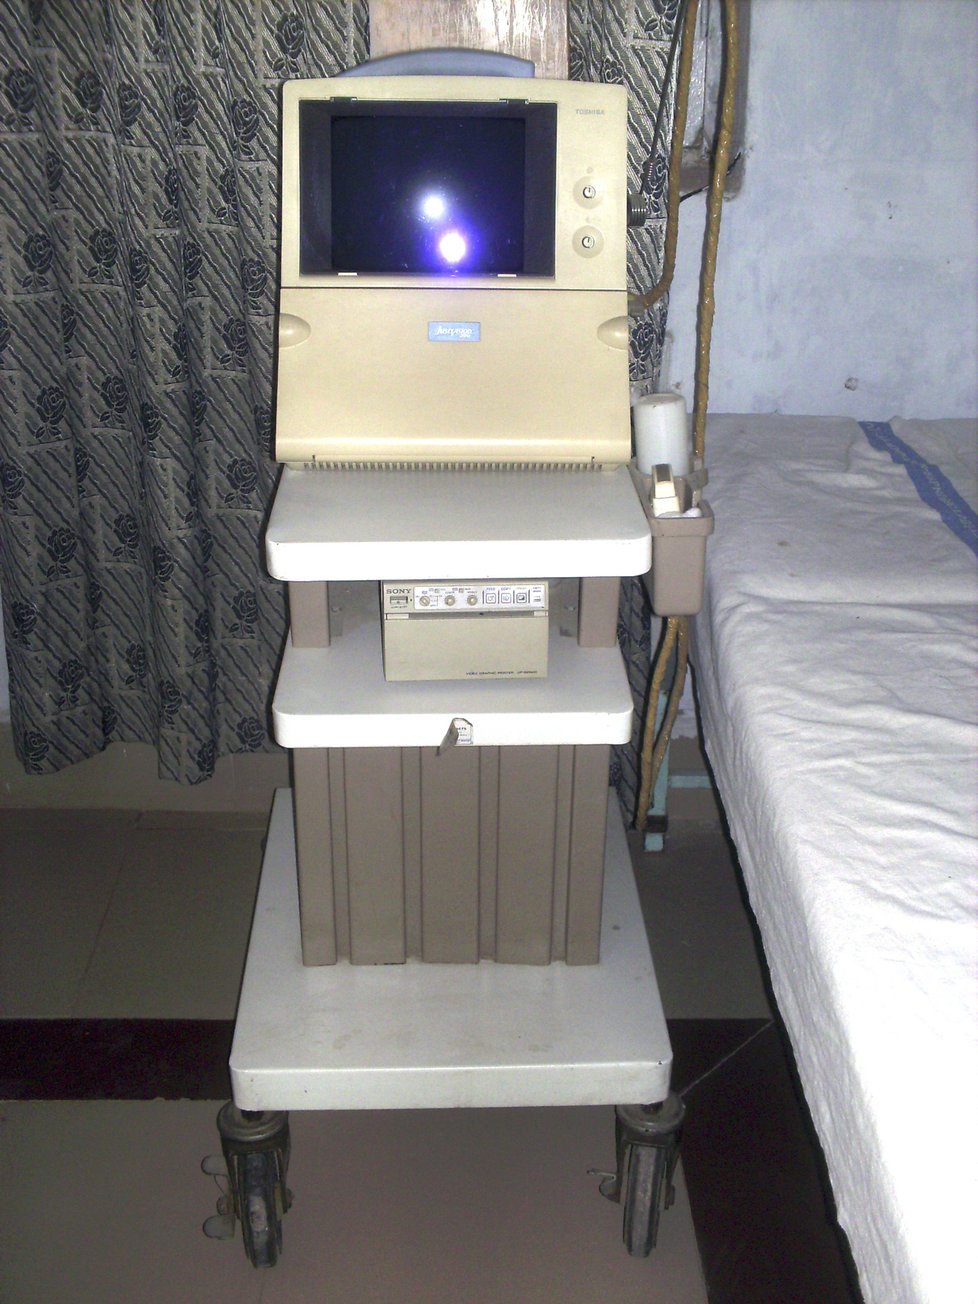 Lékařská péče a vybavení vězeňské nemocnice v Pákistánu